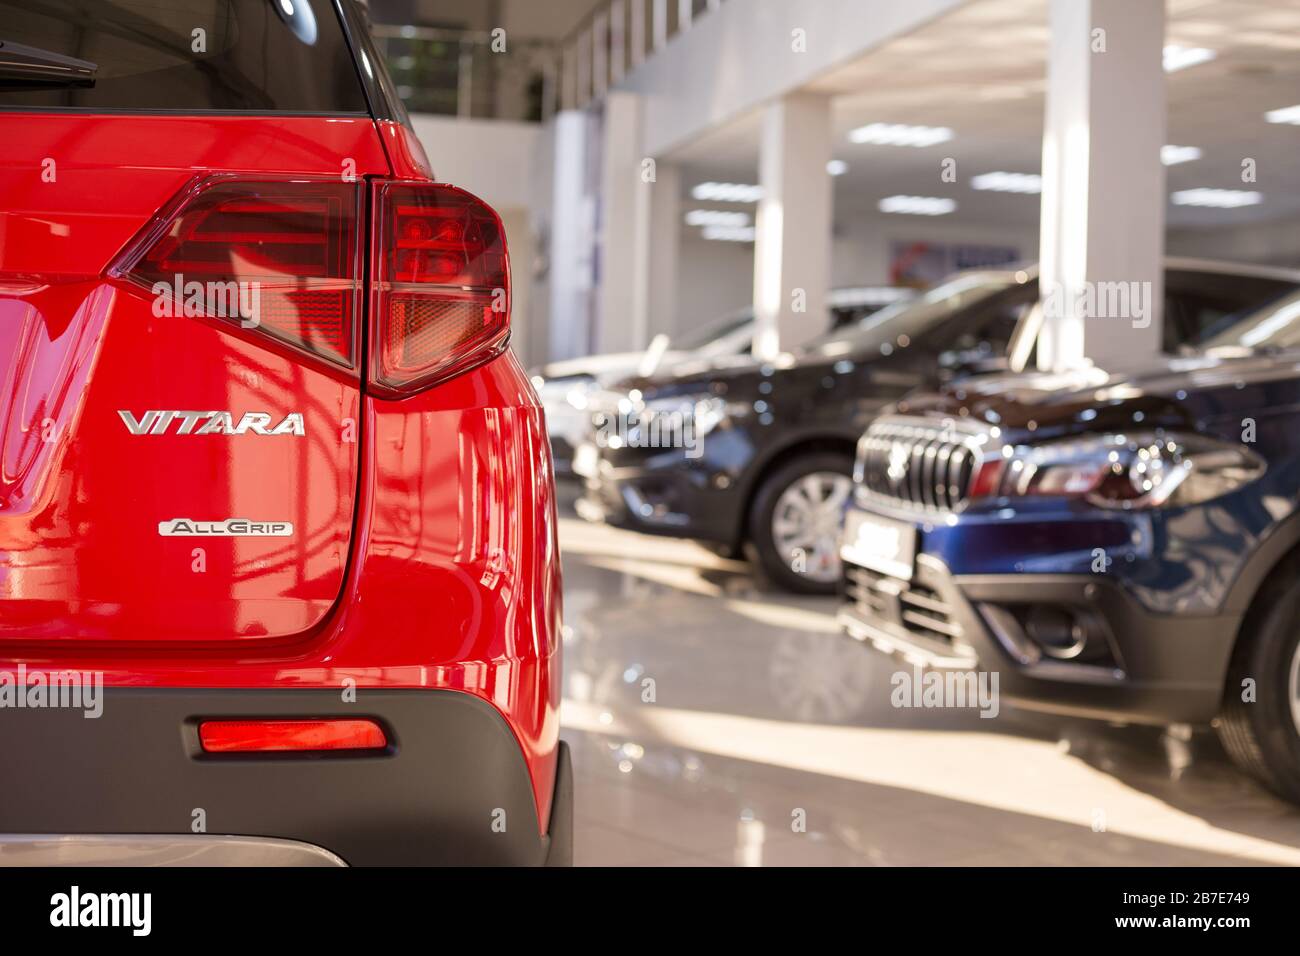 Russie, Izhevsk - 05 mars 2020: Nouvelles voitures modernes dans la salle d'exposition Suzuki. Célèbre marque mondiale. Fond flou à thème avec effet bokeh. Banque D'Images